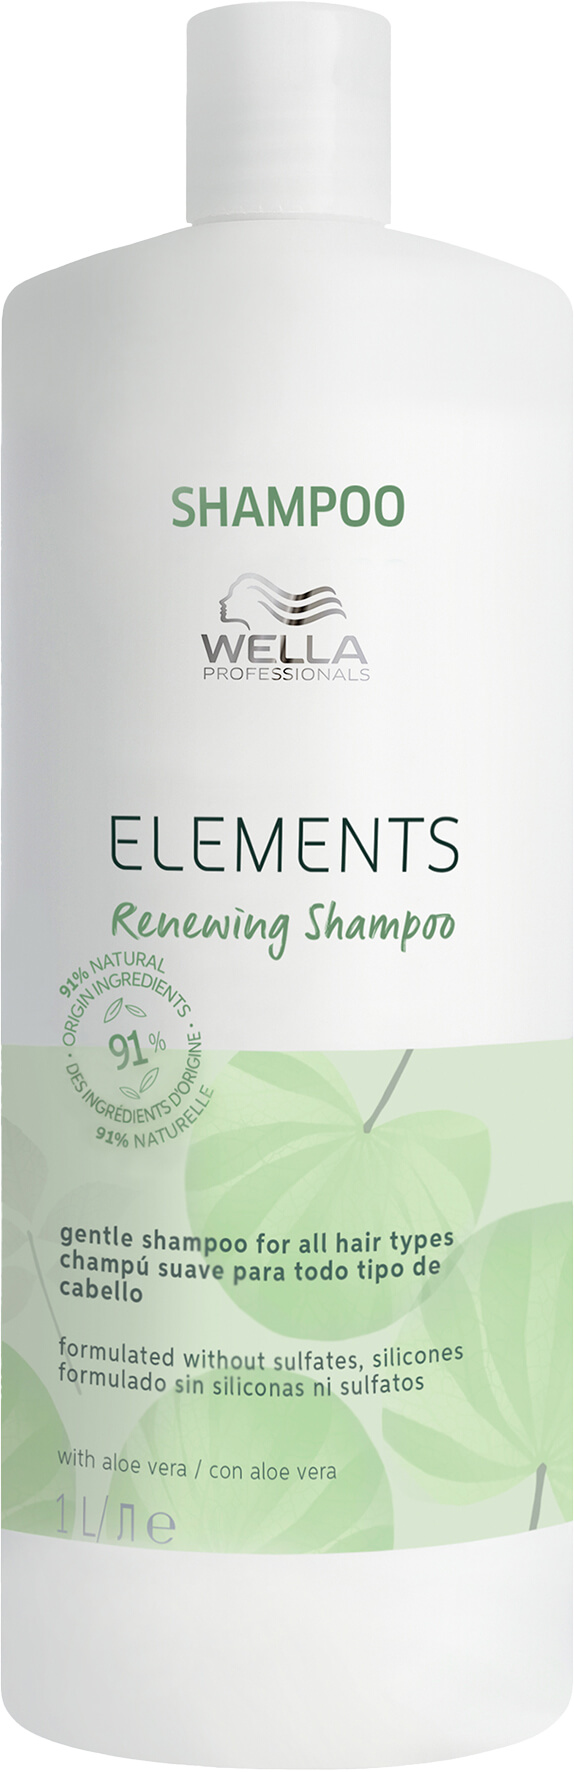 Wella Elements Renewing Shampoo für alle Haartypen (natürliche Inhaltsstoffe) 